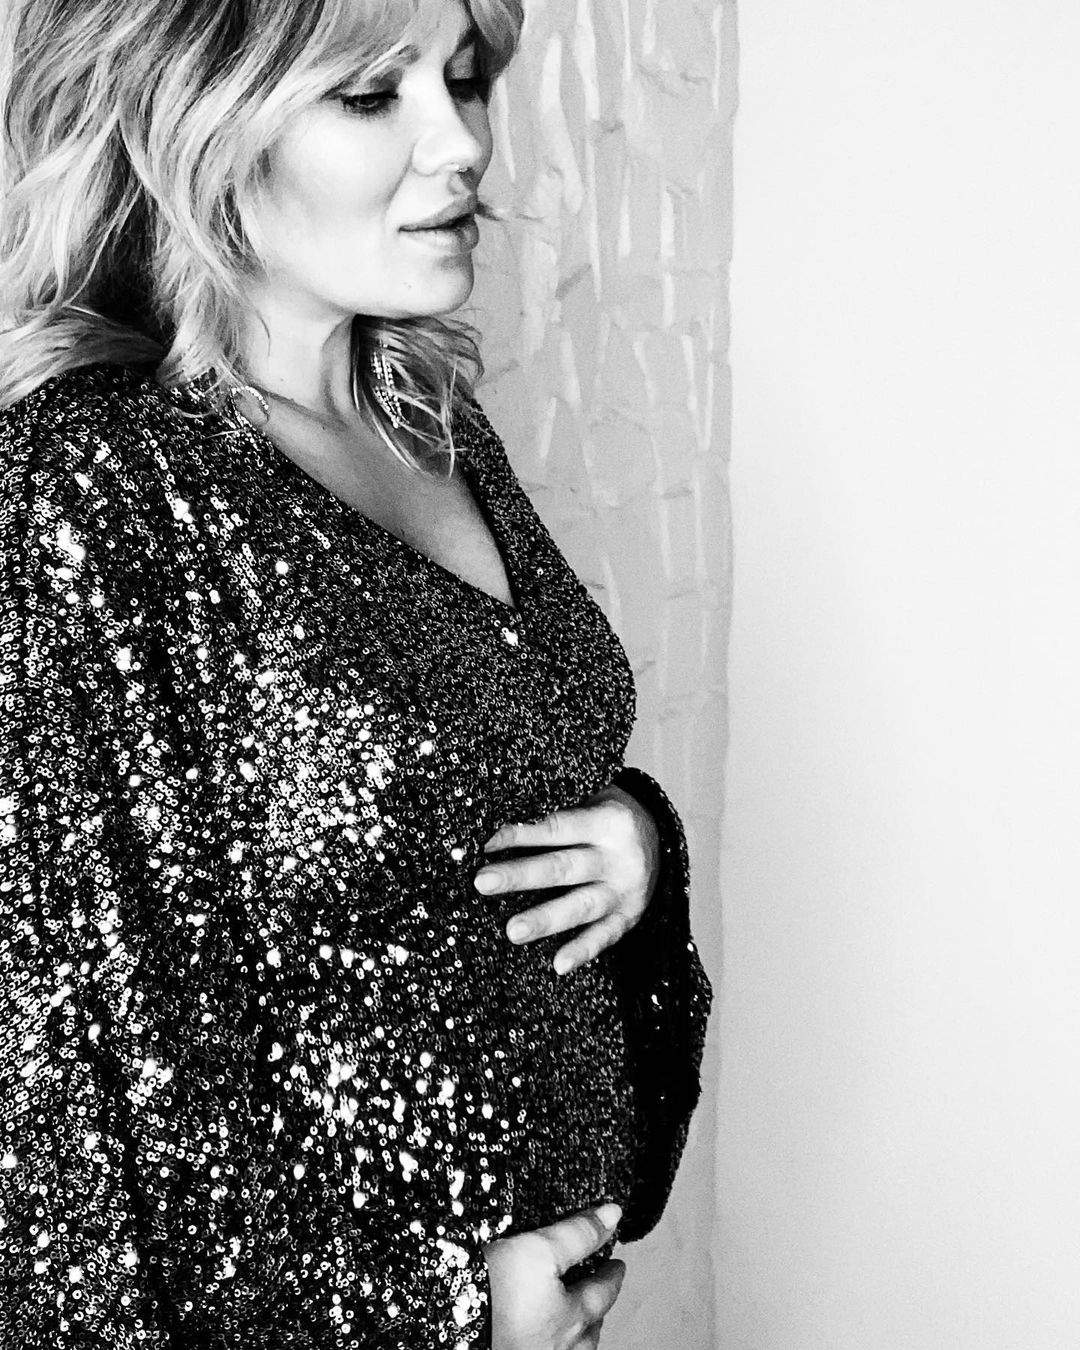 Gina Pistol gravid, în rochie neagră cu paiete.